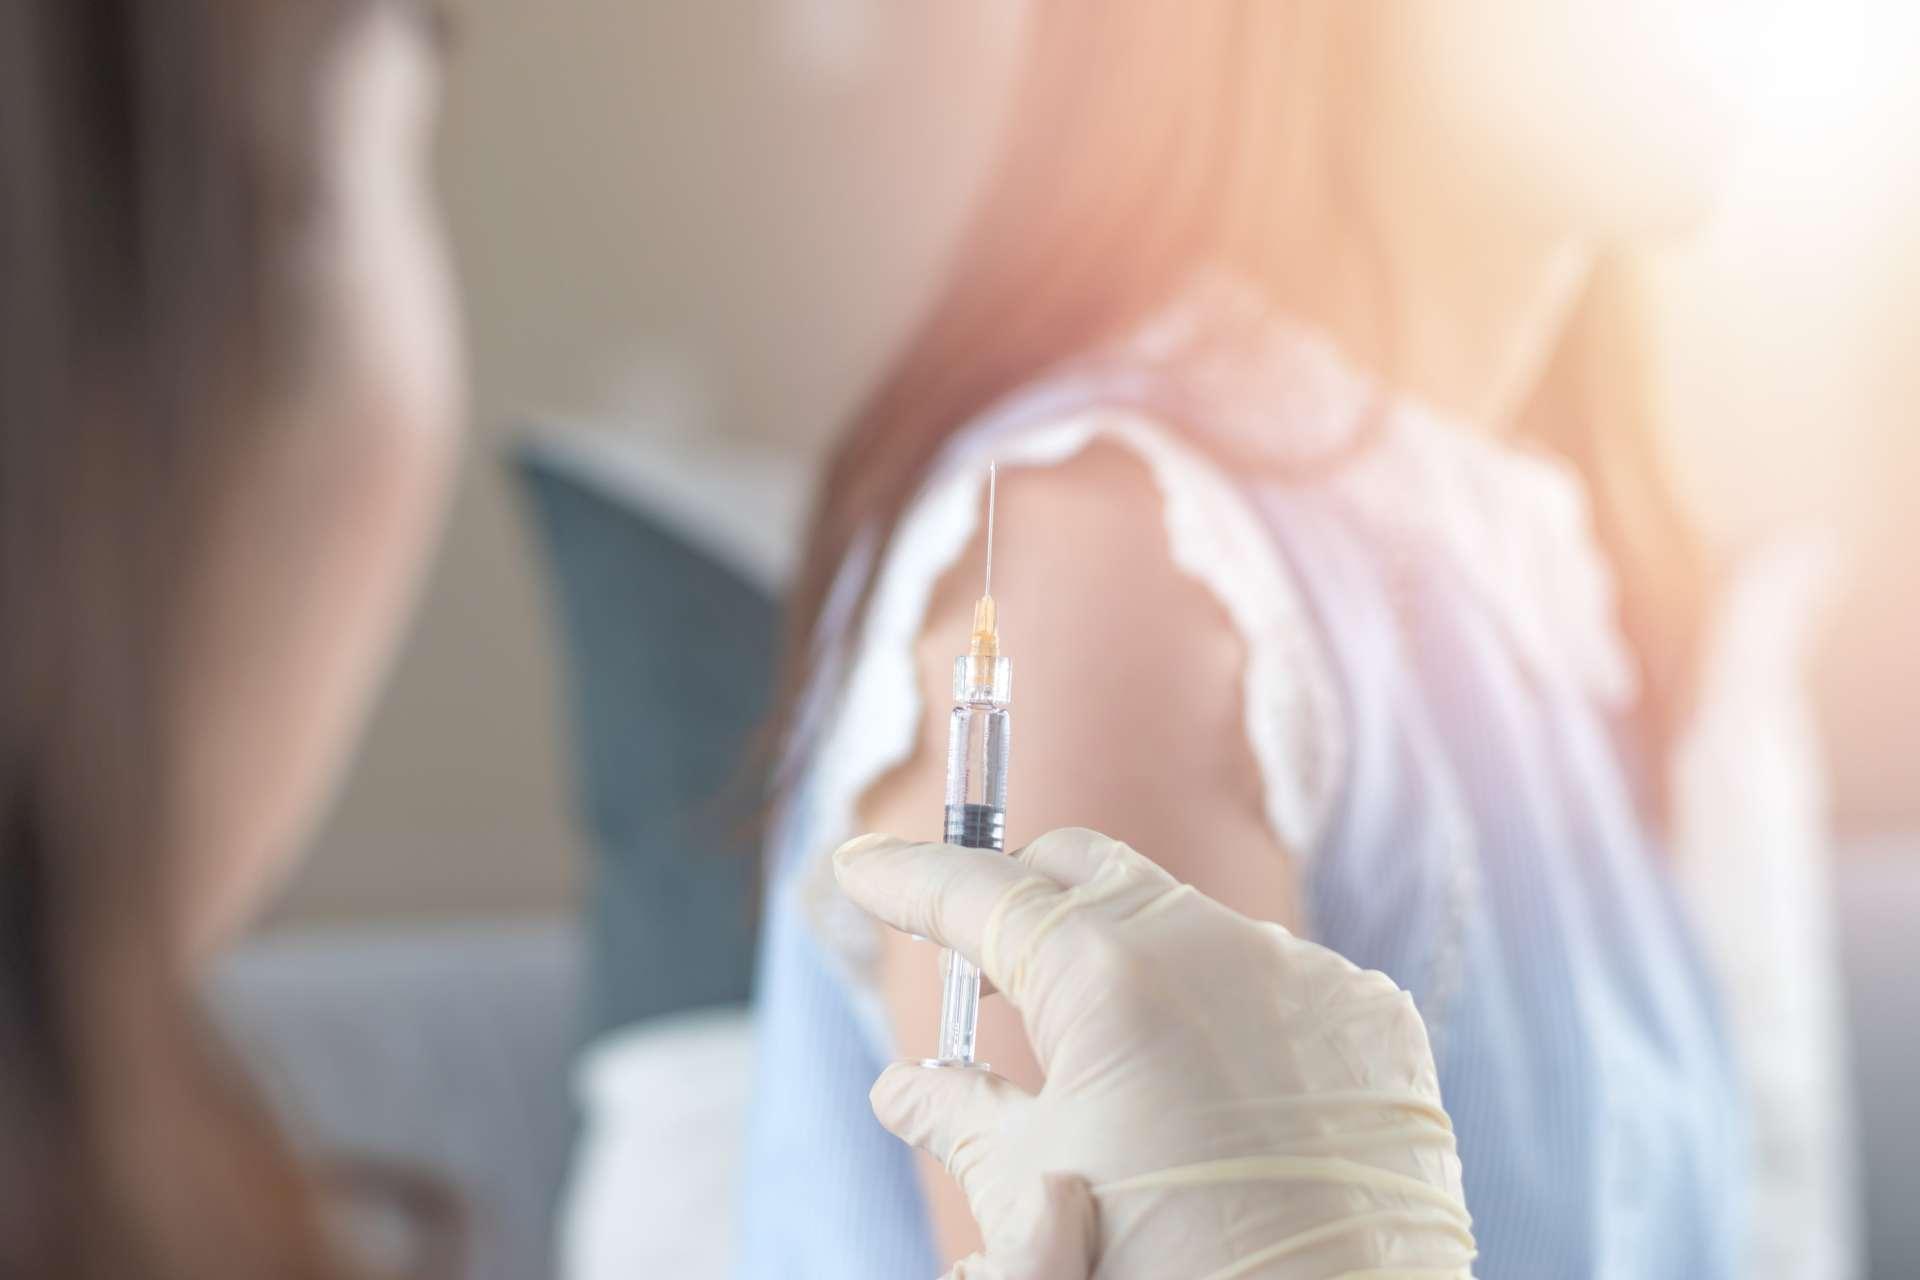 Weltimmunisierungswoche und Konzept des Internationalen HPV-Bewusstseinstages. Frau mit Impfung gegen Influenza oder Grippeimpfung oder HPV-Prävention mit Spritze durch eine Krankenschwester oder einen Arzt.